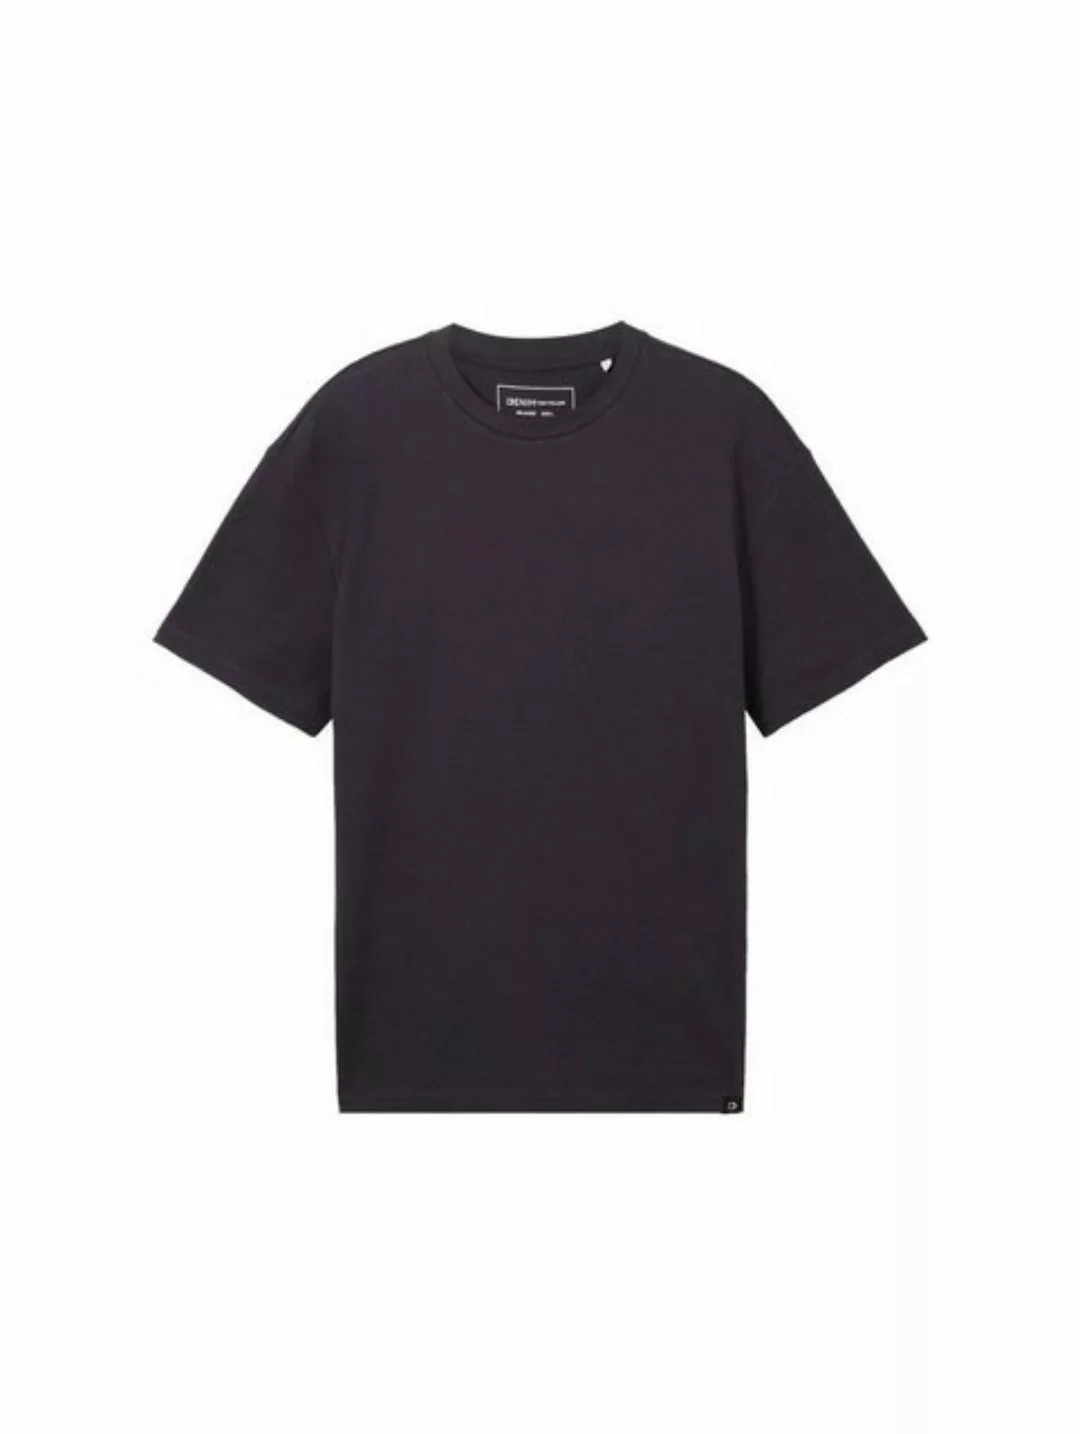 TOM TAILOR Denim T-Shirt T-Shirt mit Waffelstruktur günstig online kaufen